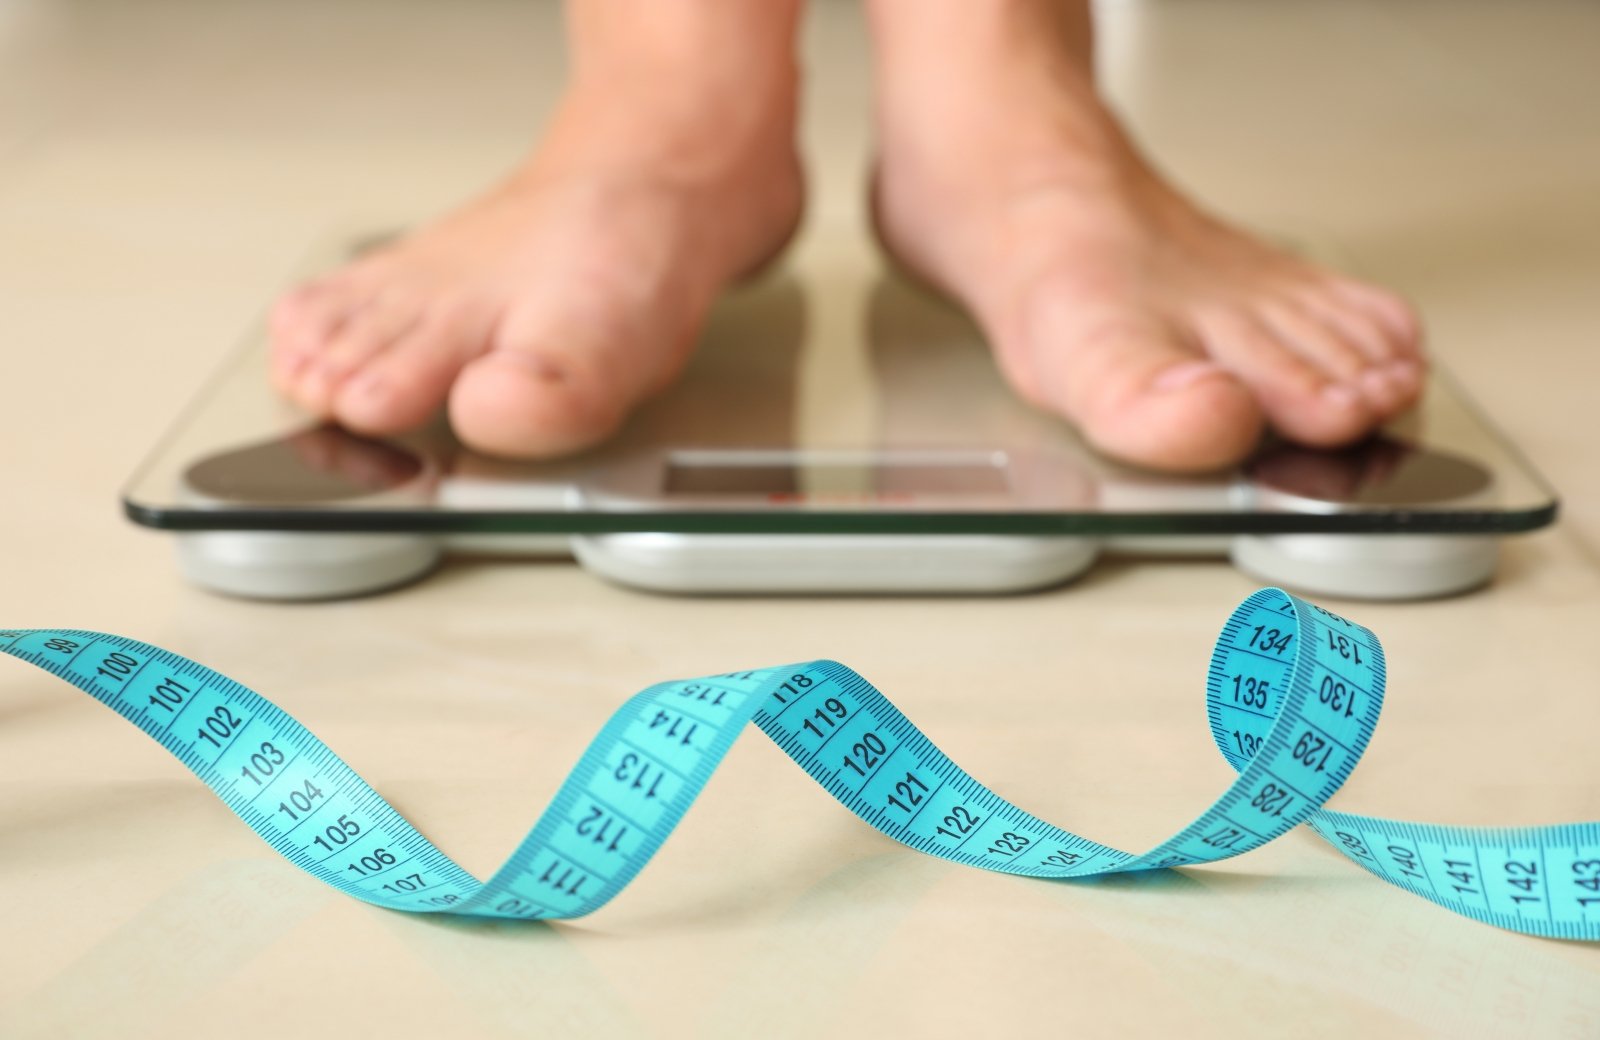 svorio netekimo patarimai urdu paveikslėliuose ar specialus k priverčia tave numesti svorį